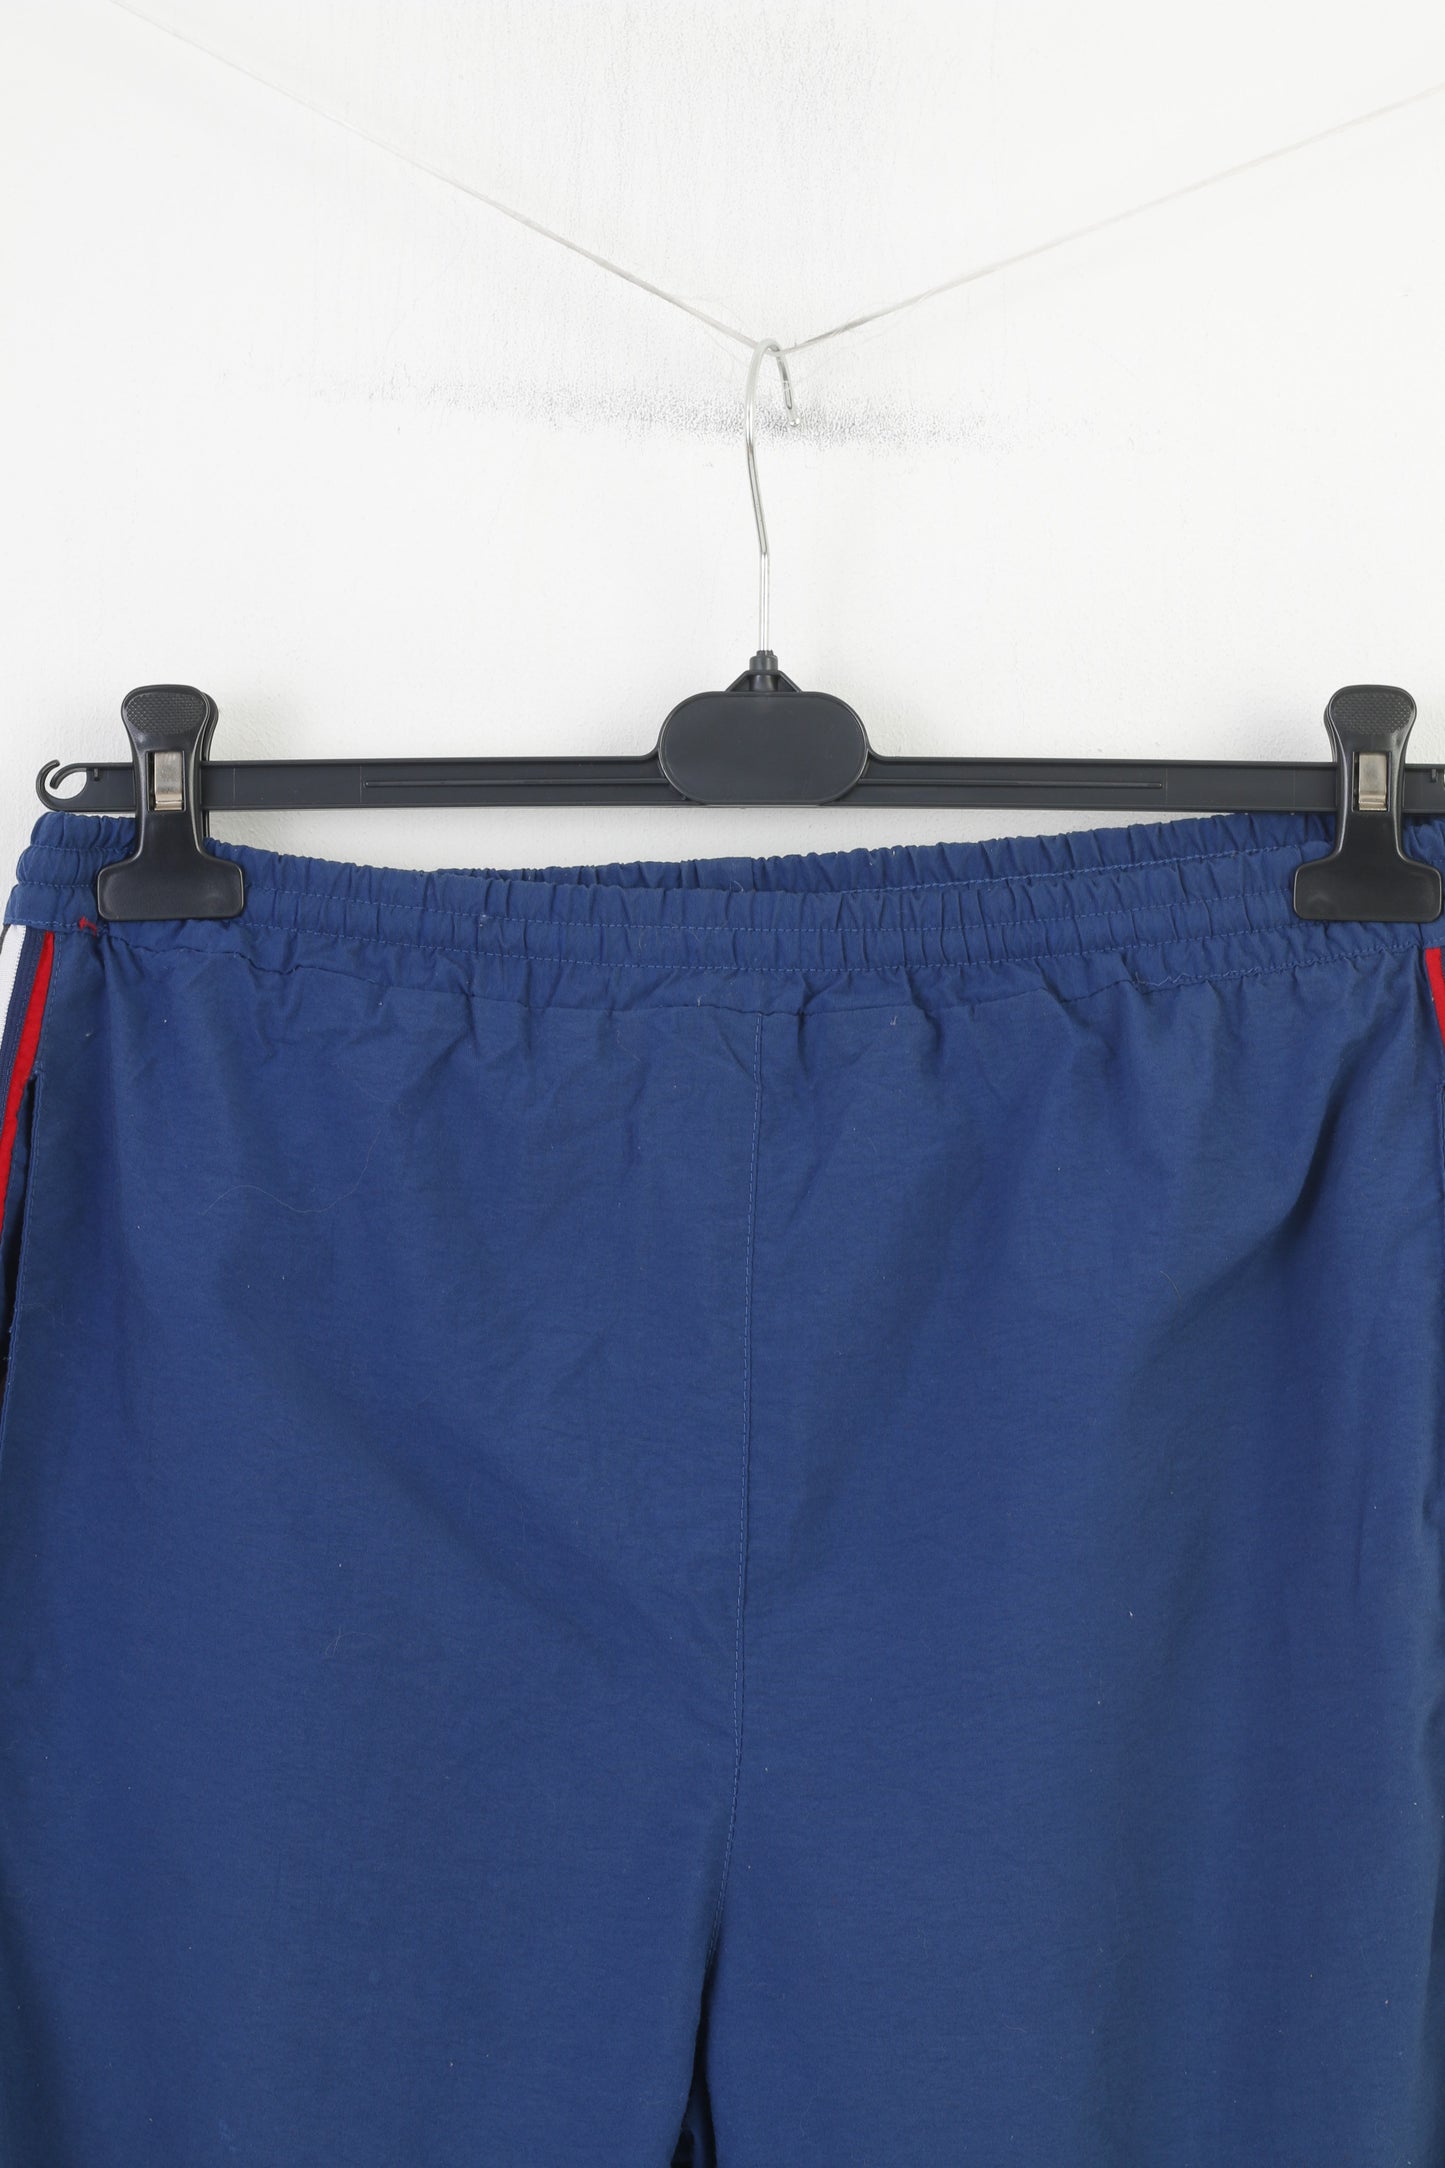 Pantaloni sportivi Puma da uomo in nylon blu scuro da allenamento sportivo a vita regolare